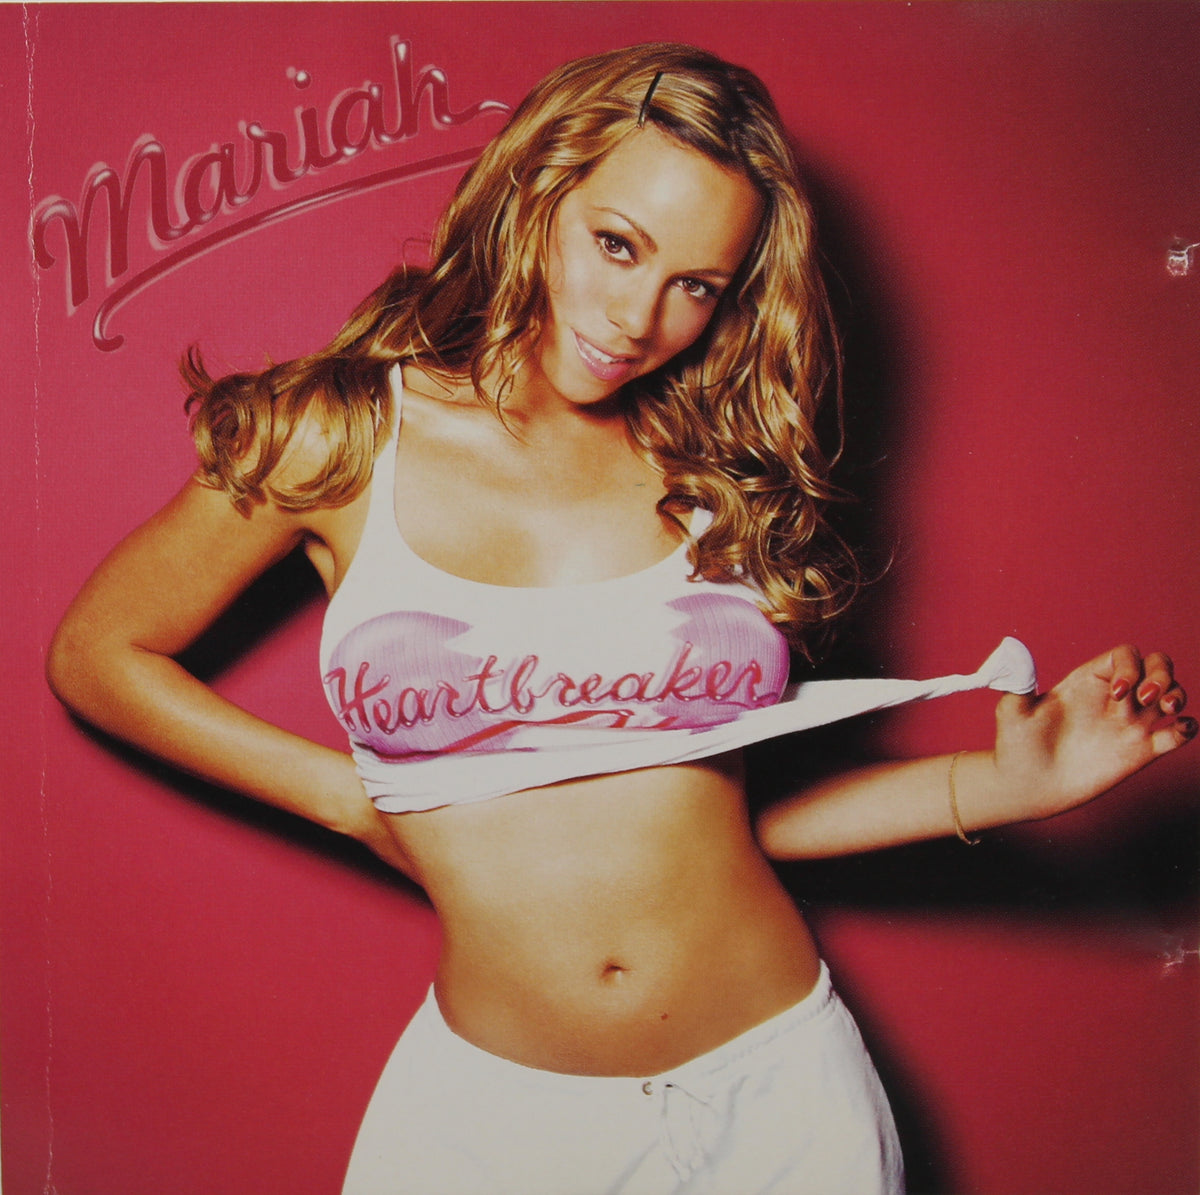 Mariah – Heartbreaker, CD, Maxi-Single, South Korea 1999 (CD 607)